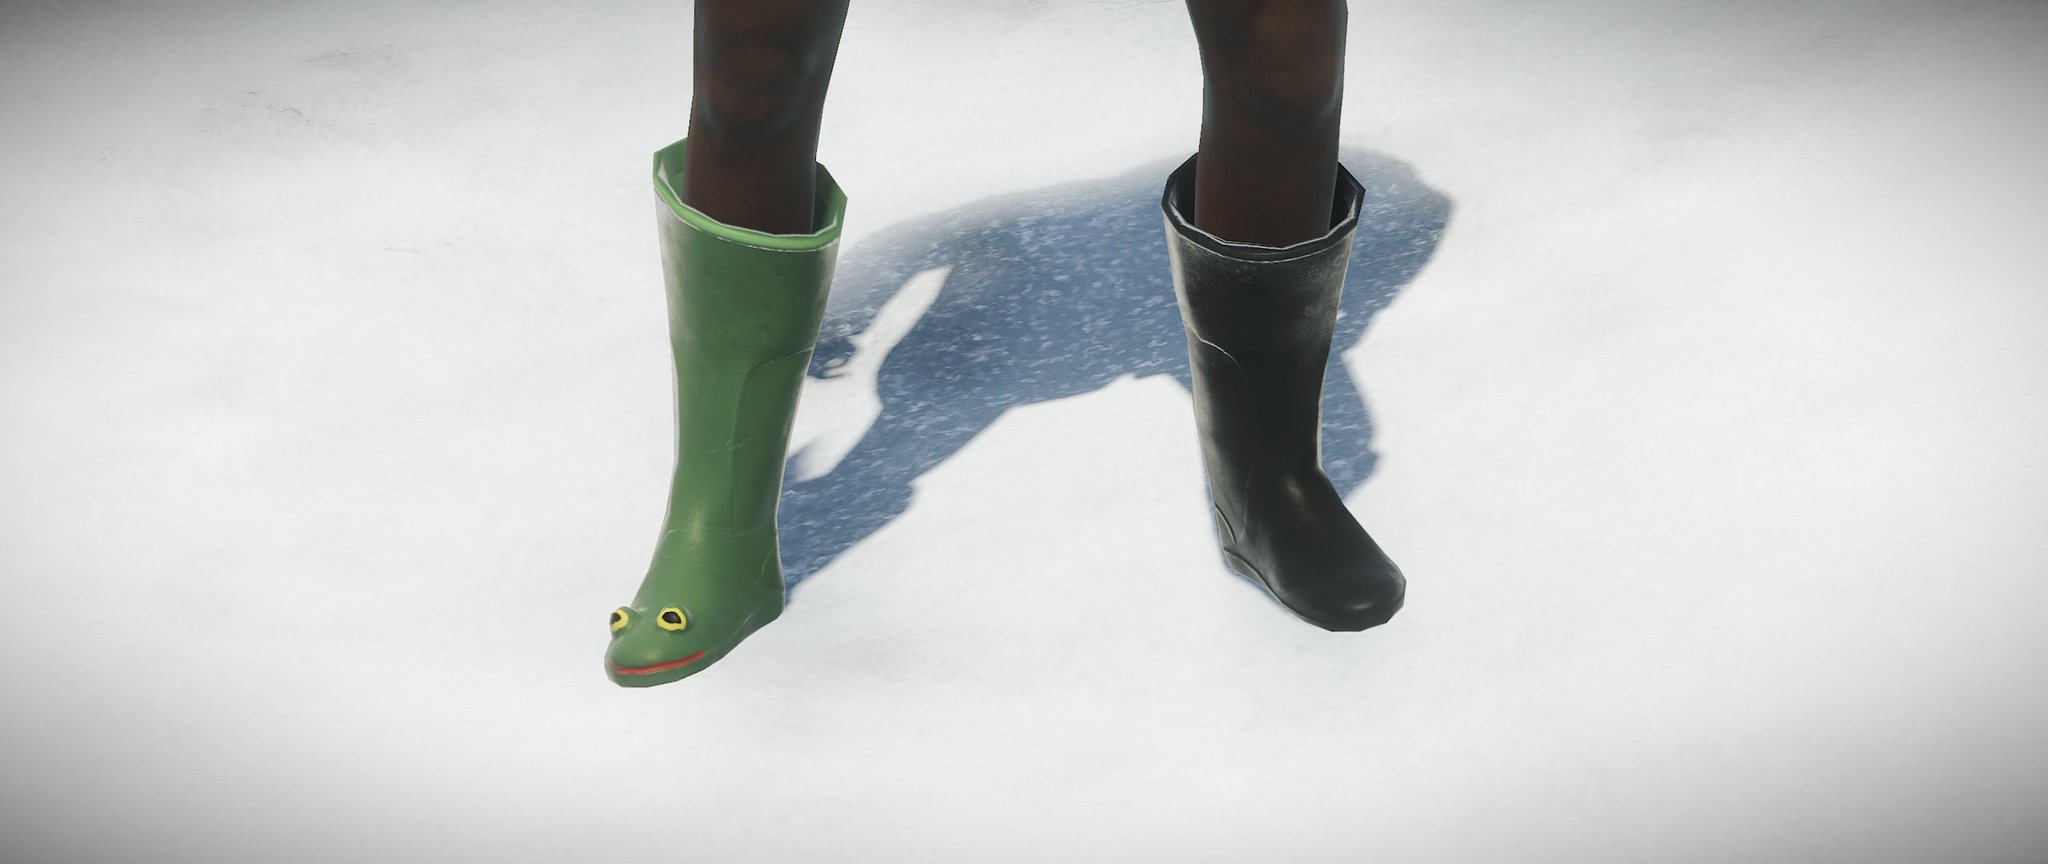 Frog boots rust цена фото 9